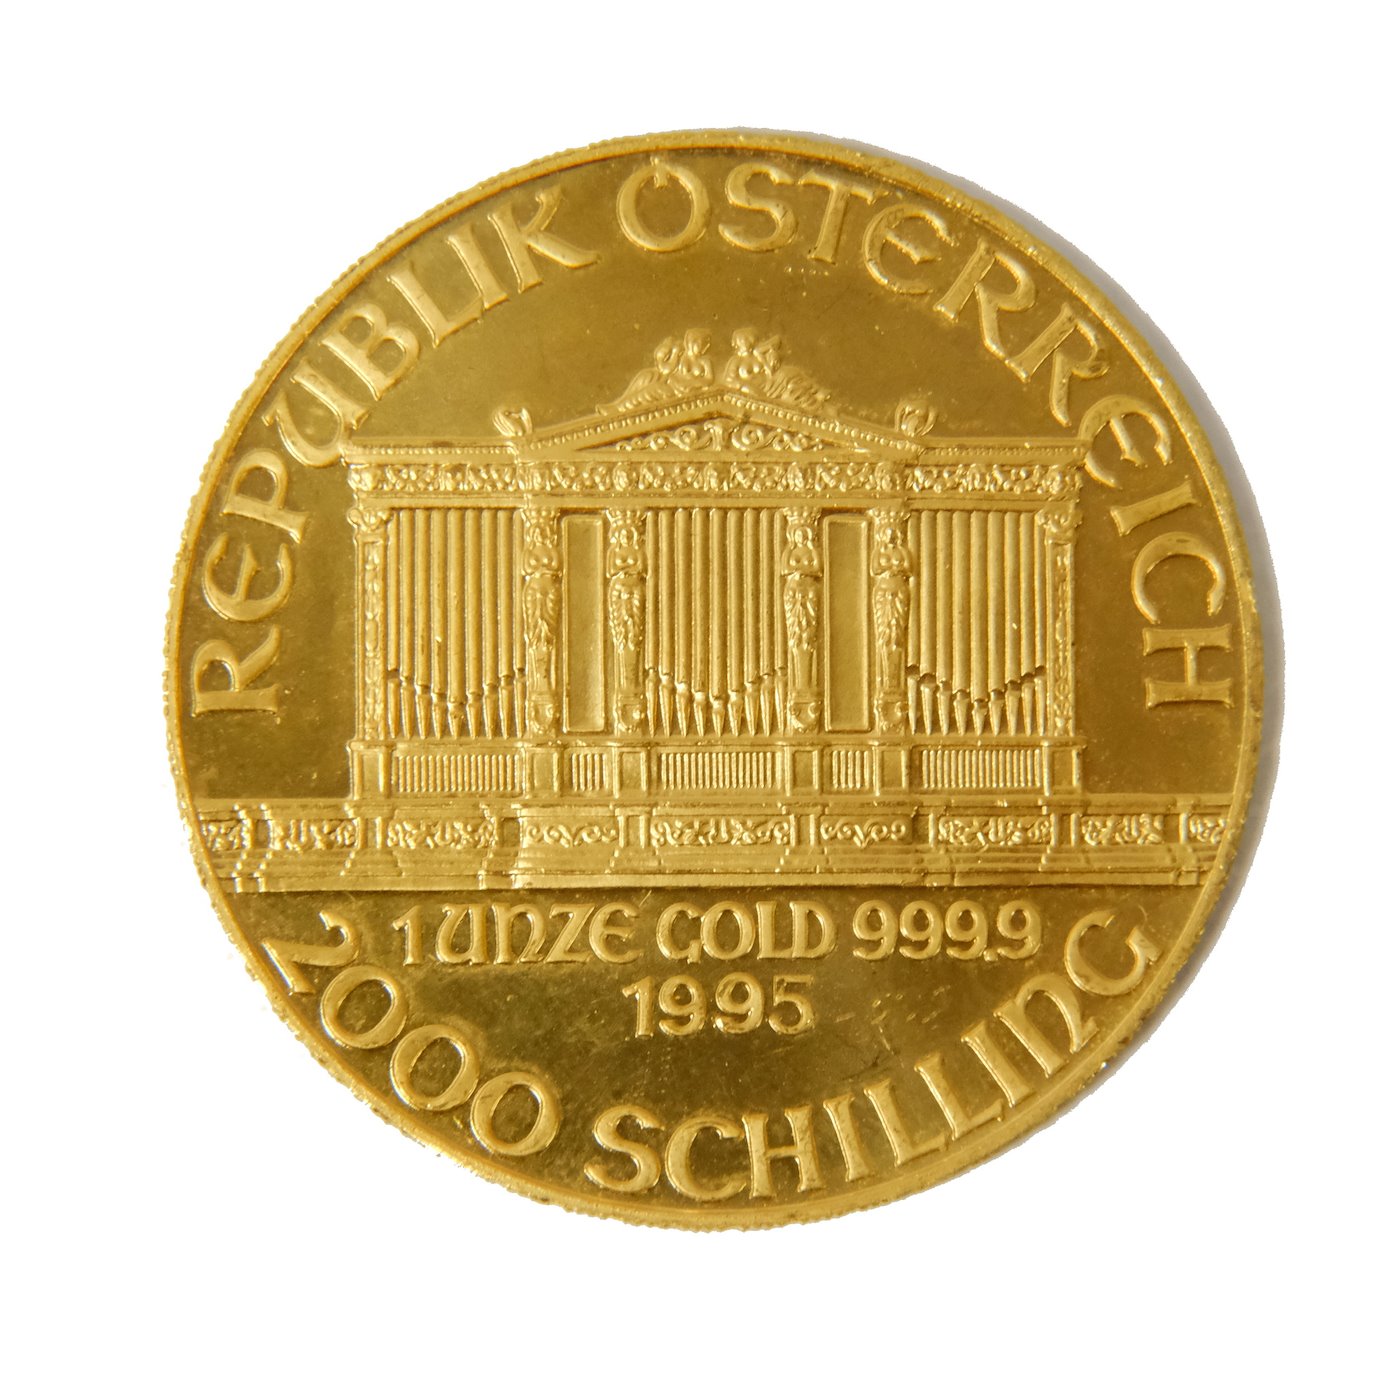 Mince - Zlatá 1 Uncová mince 2000 Schilling Philharmoniker 1995 Rakousko. Zlato 999,9/1000, hmotnost hrubá 31,15g